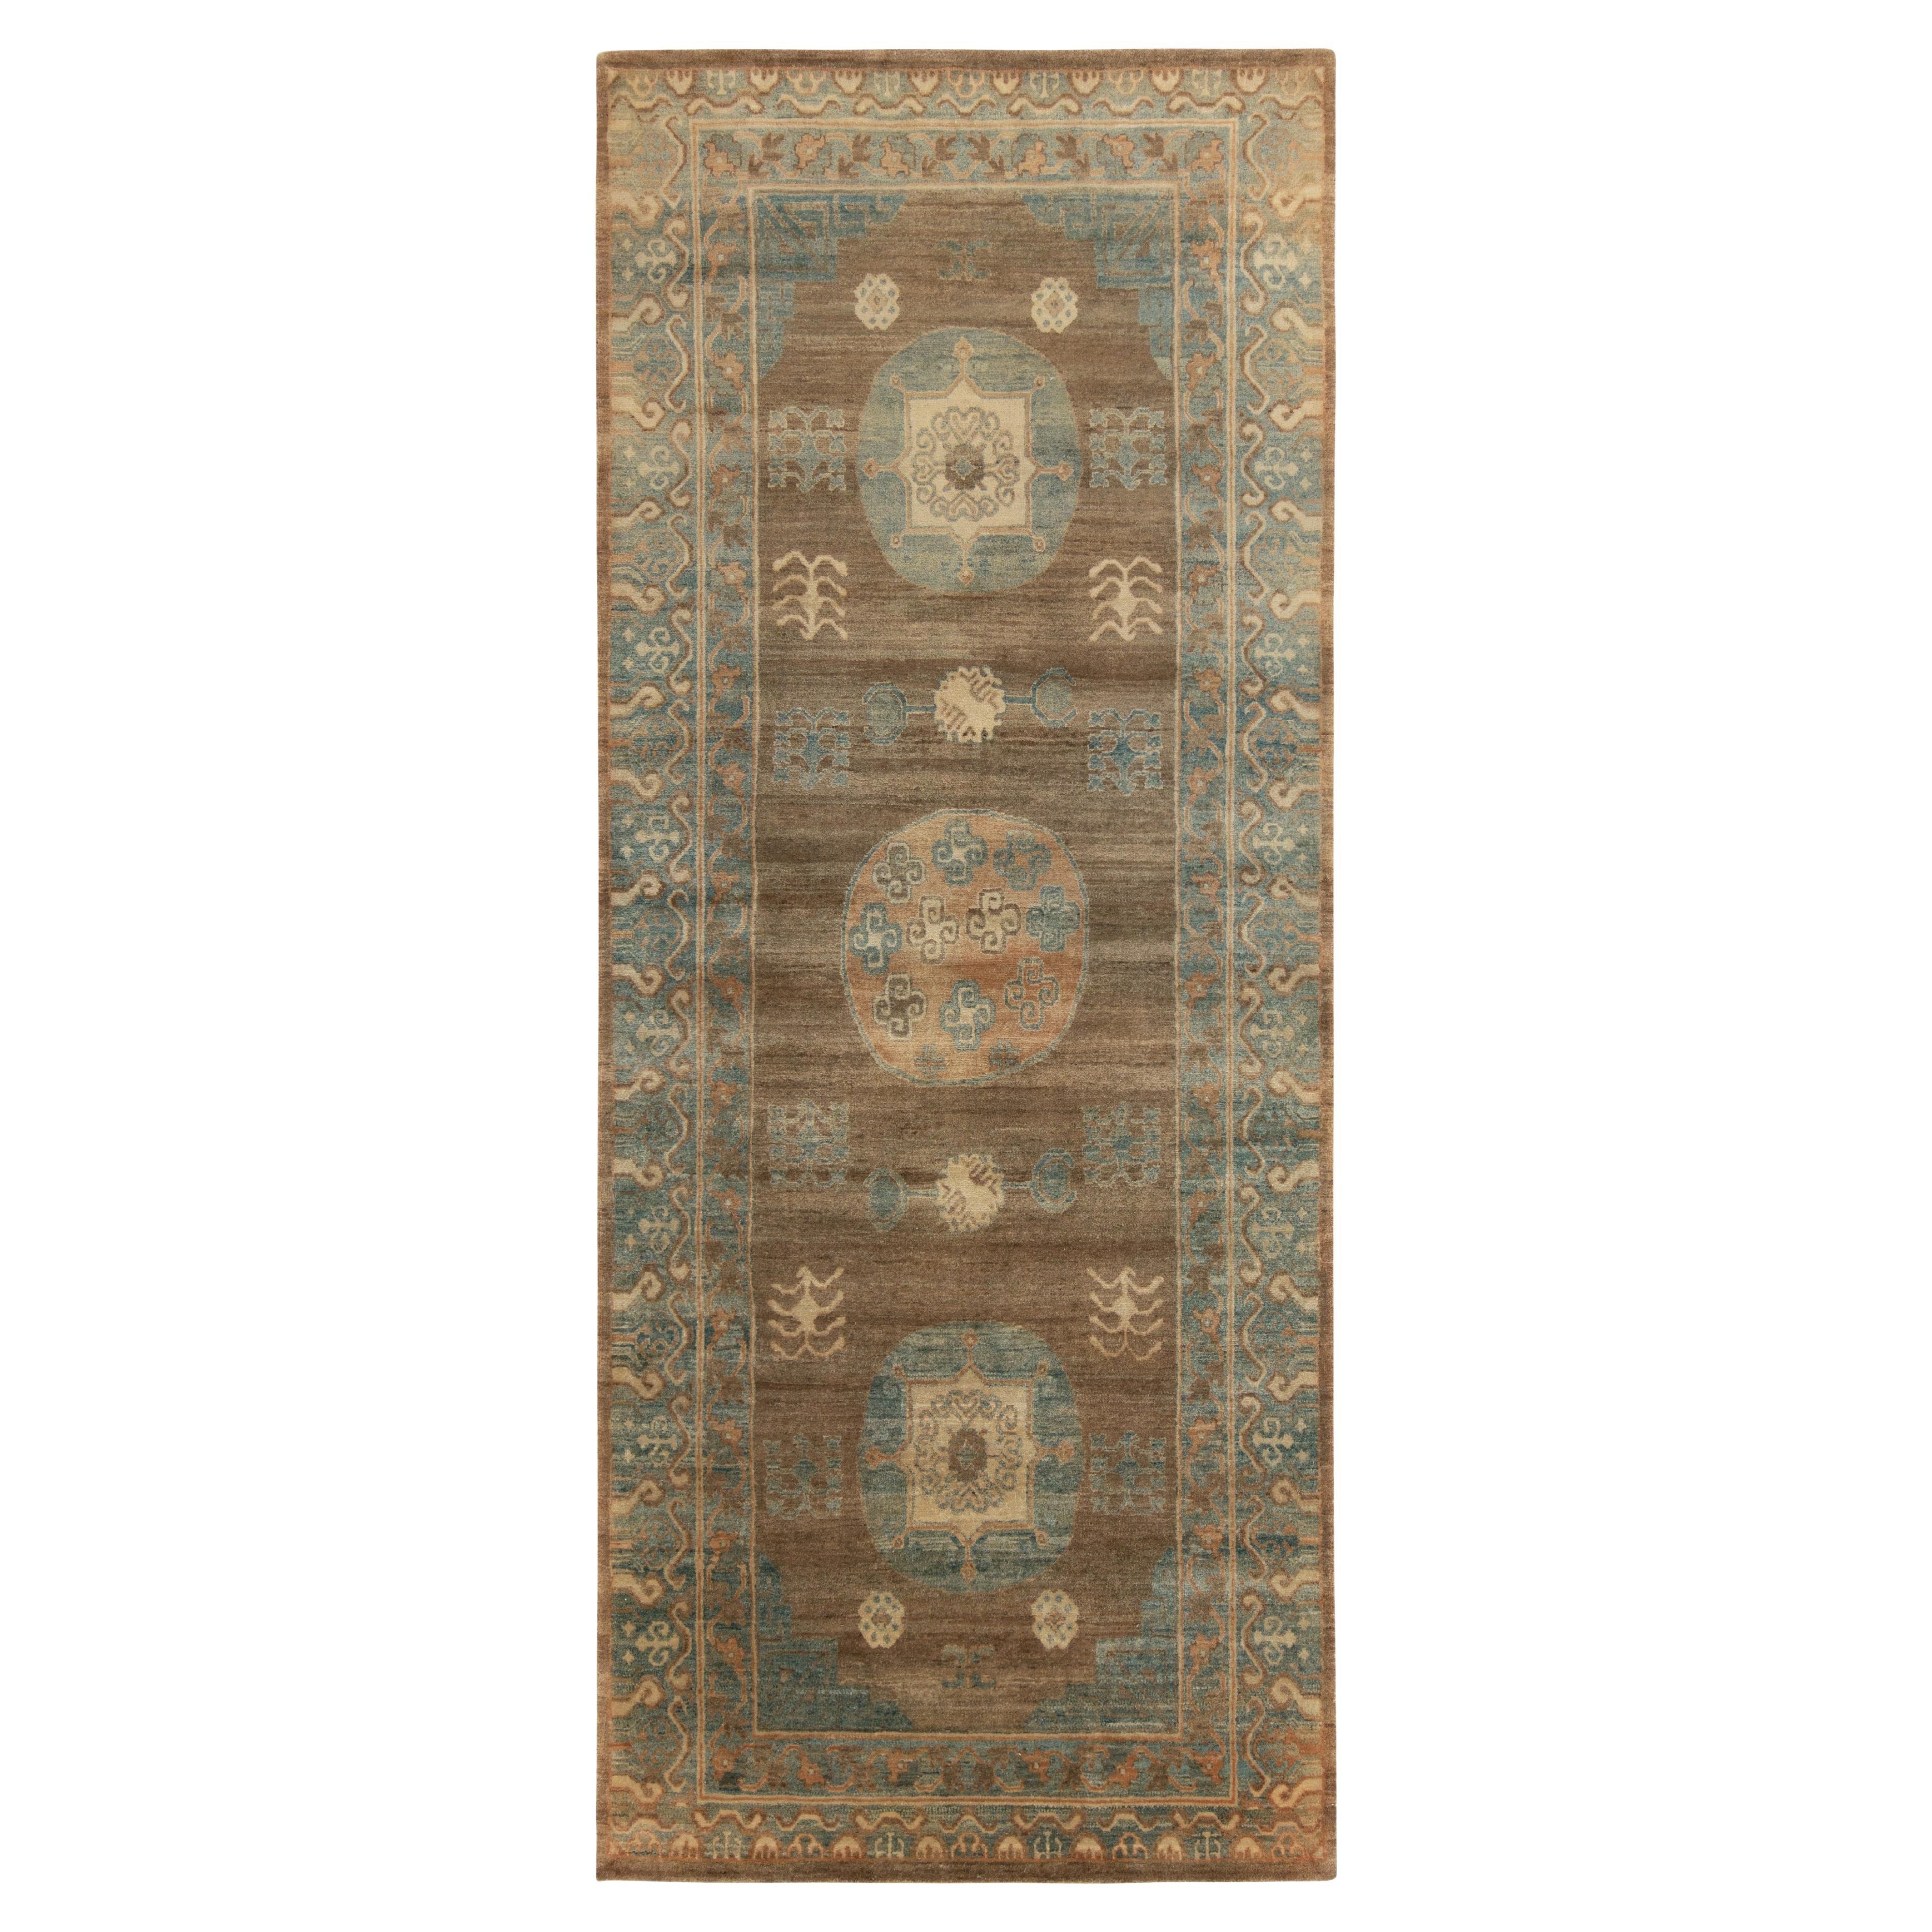 Teppich & Kilims Khotan-Teppich im Samarkand-Stil in Beige-Braun und Blau mit Medaillonmuster